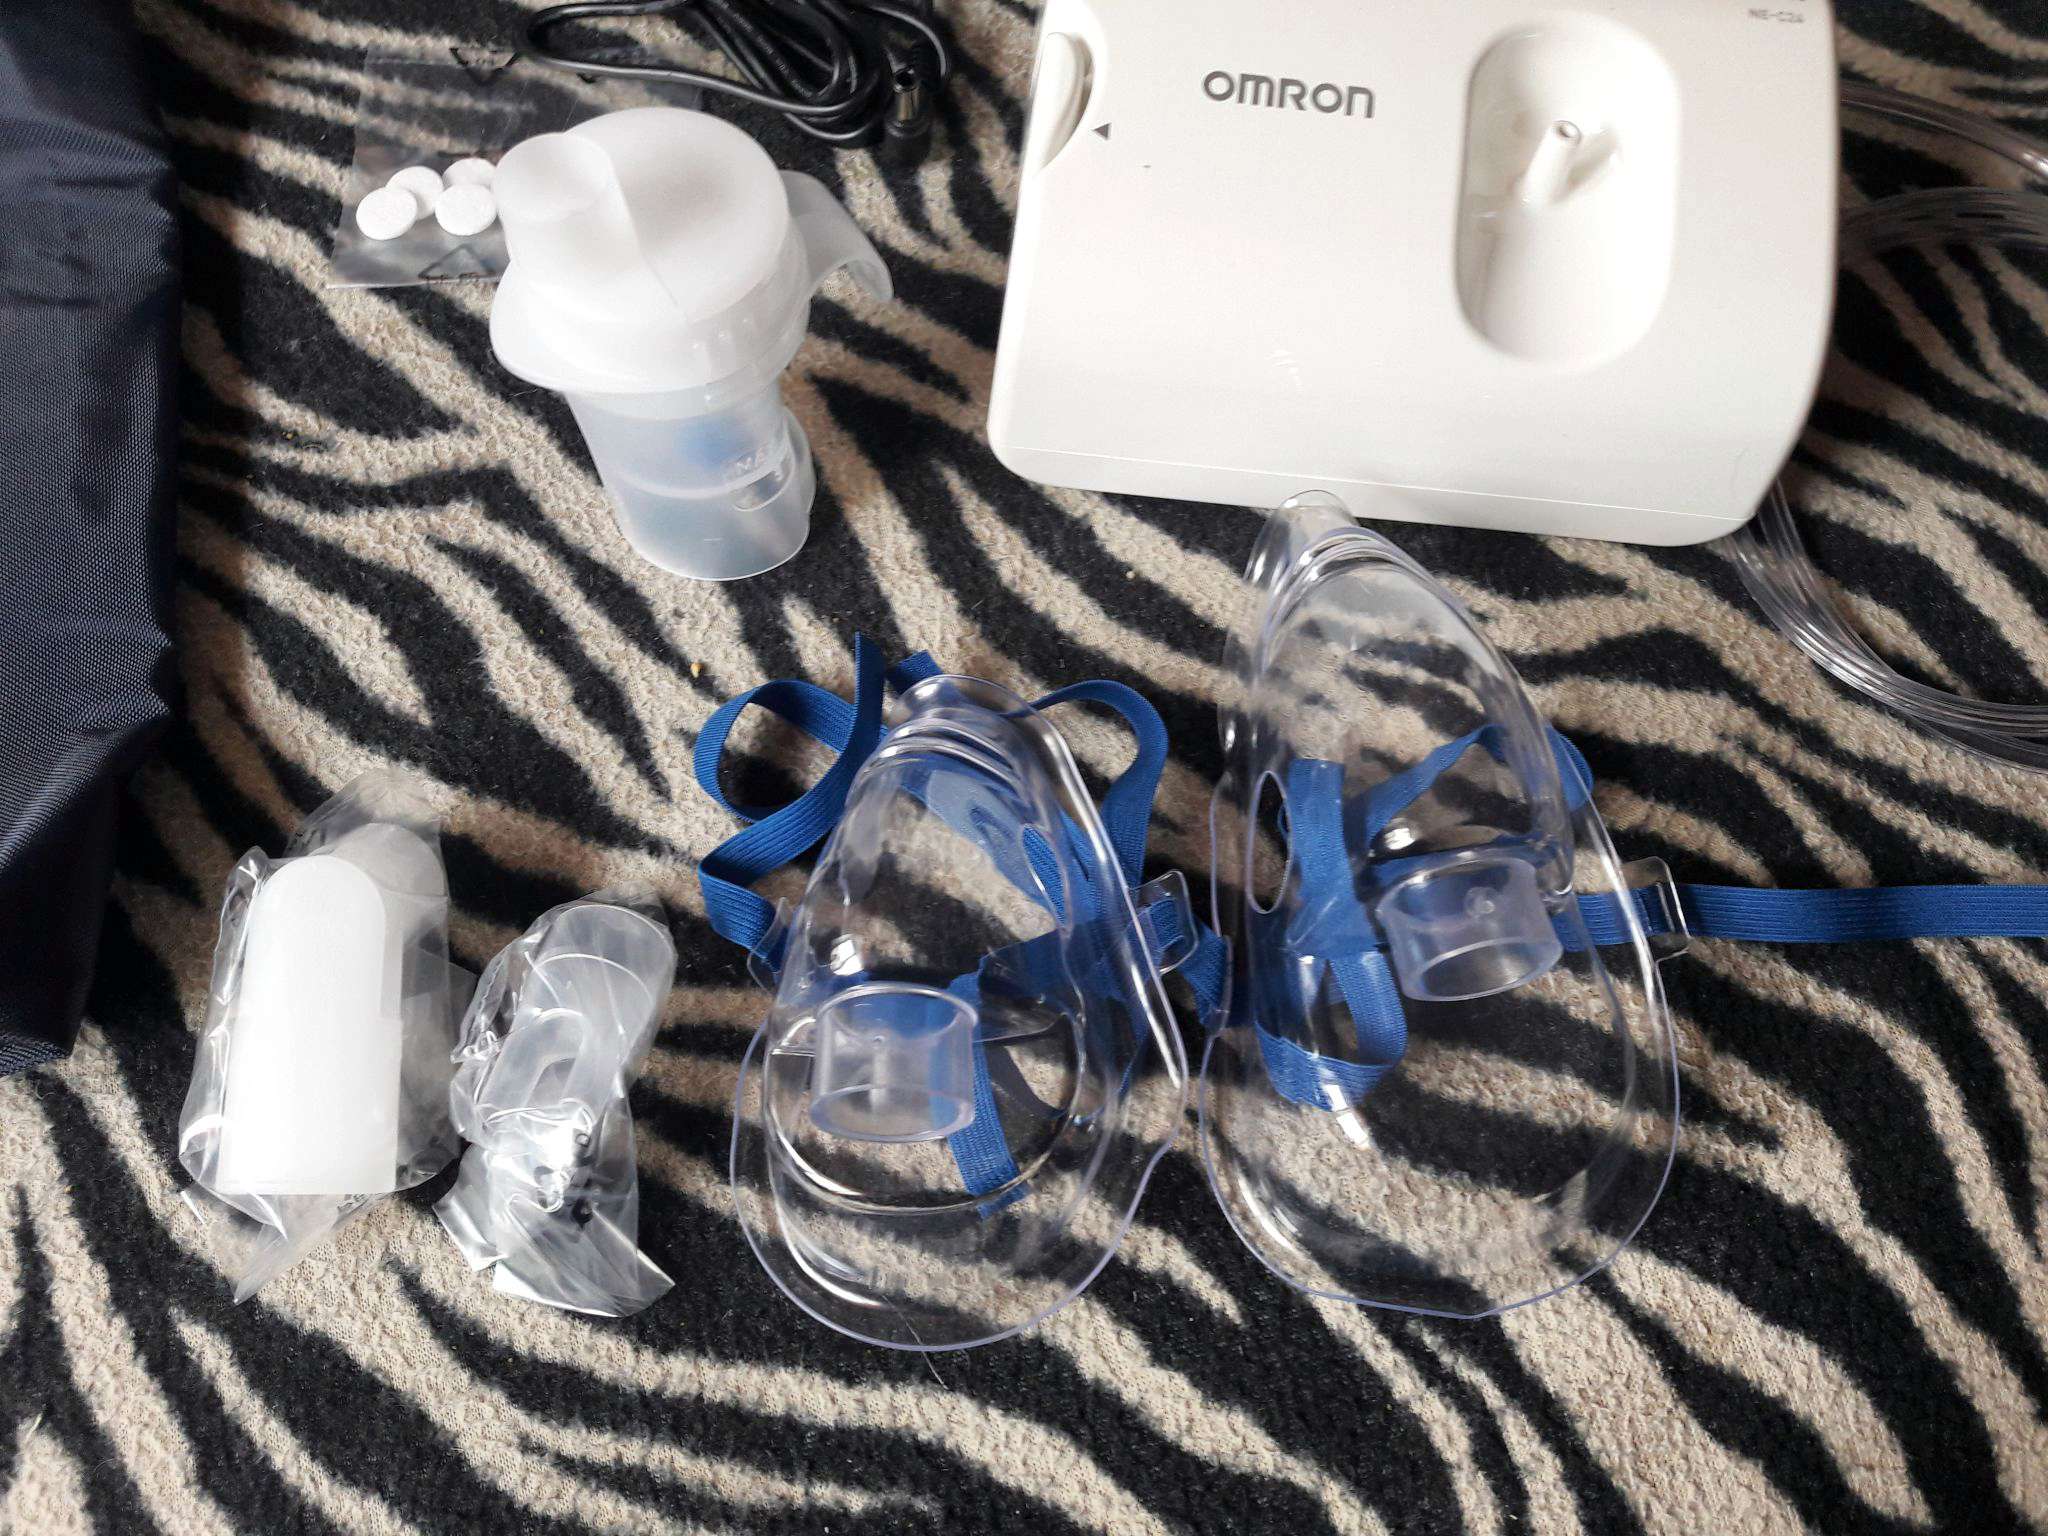 Как пользоваться ингалятором омрон ne c24 видео megasonex ультразвуковая зубная щетка инструкция по применению